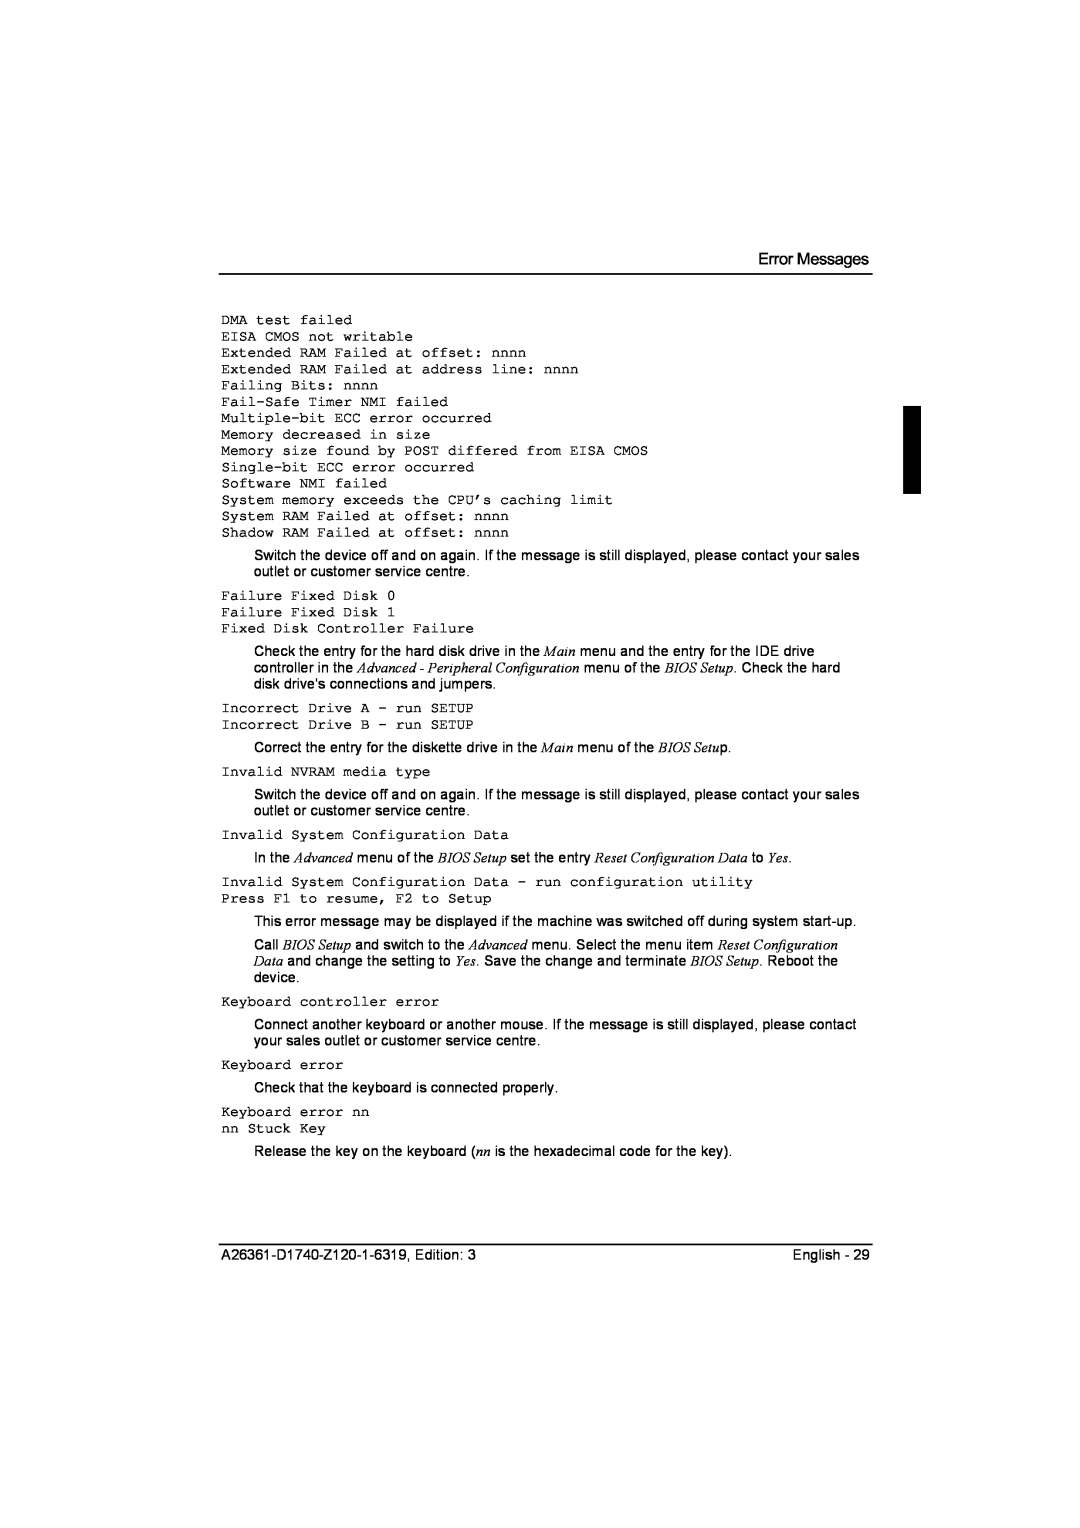 Fujitsu D1740 technical manual Error Messages 